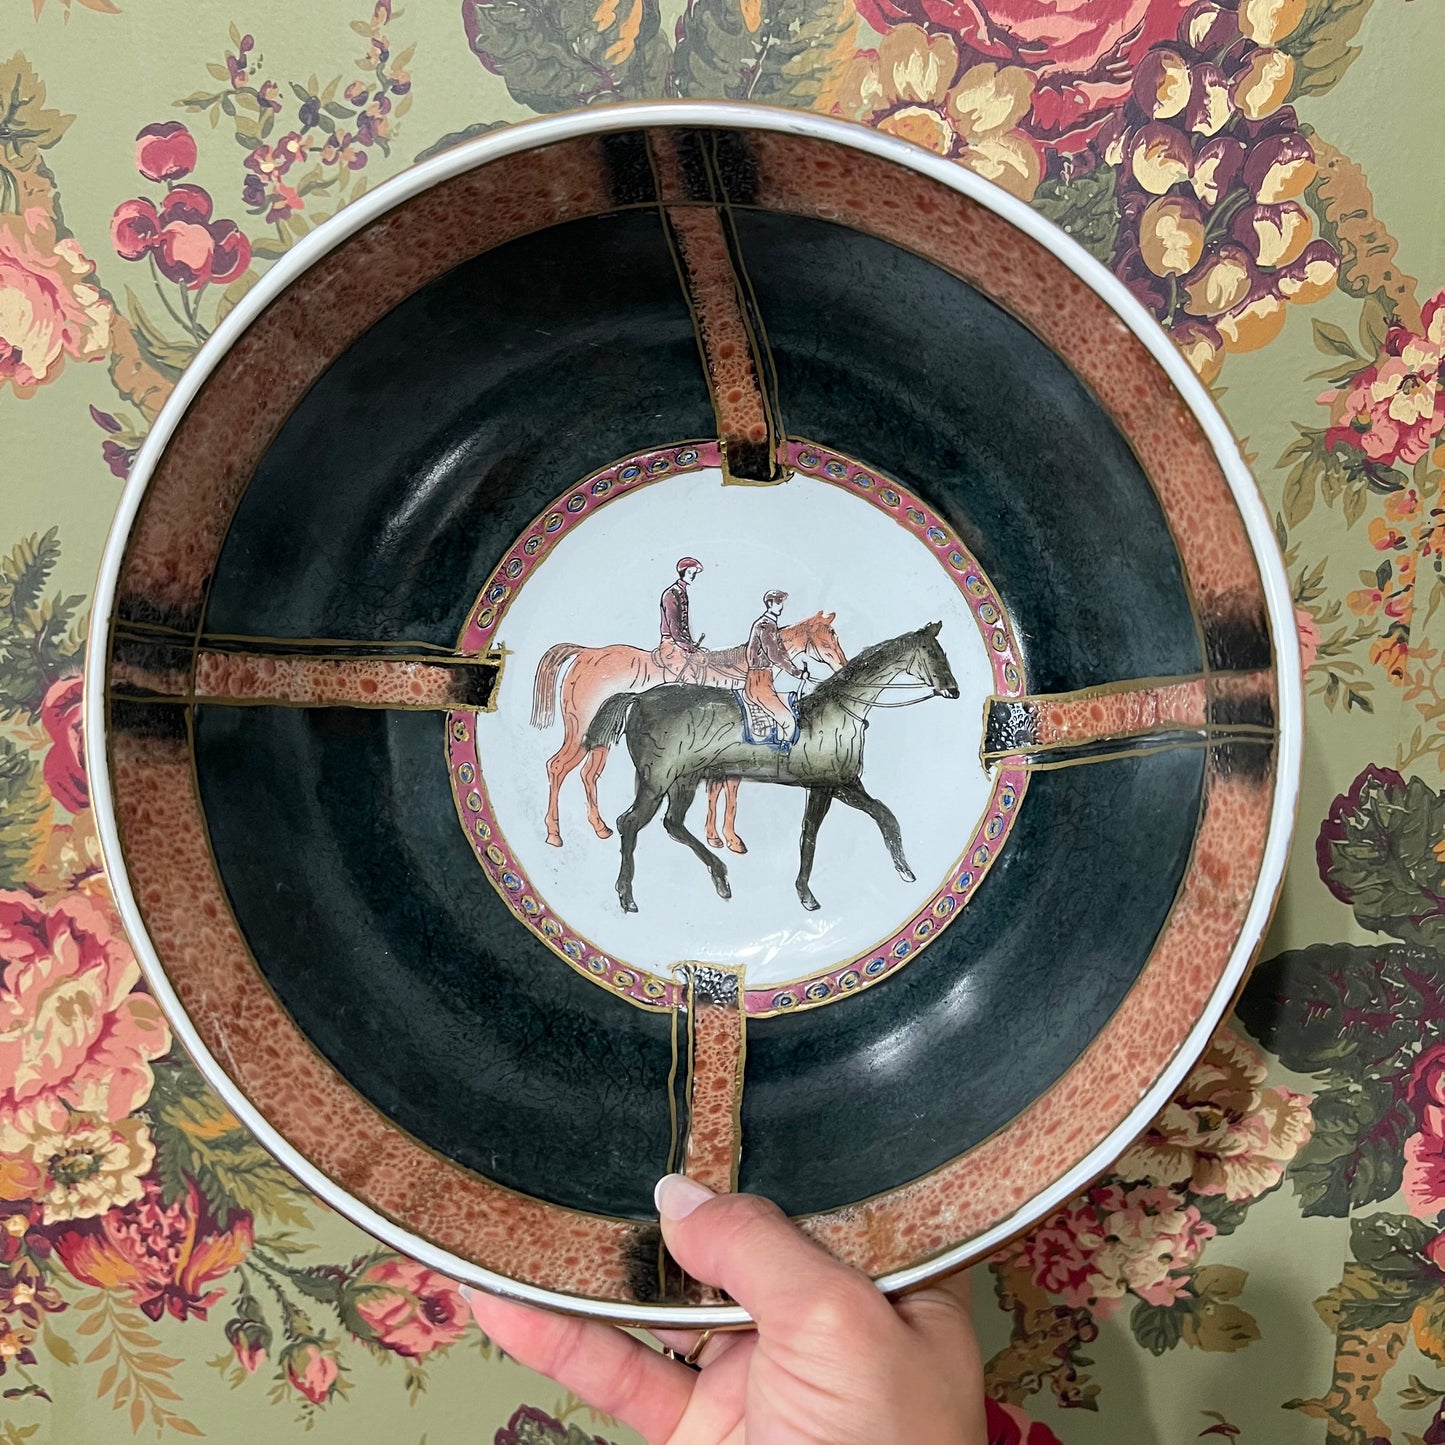 Mid 20th Century Porcelain Ceramic Equestrian Bowl